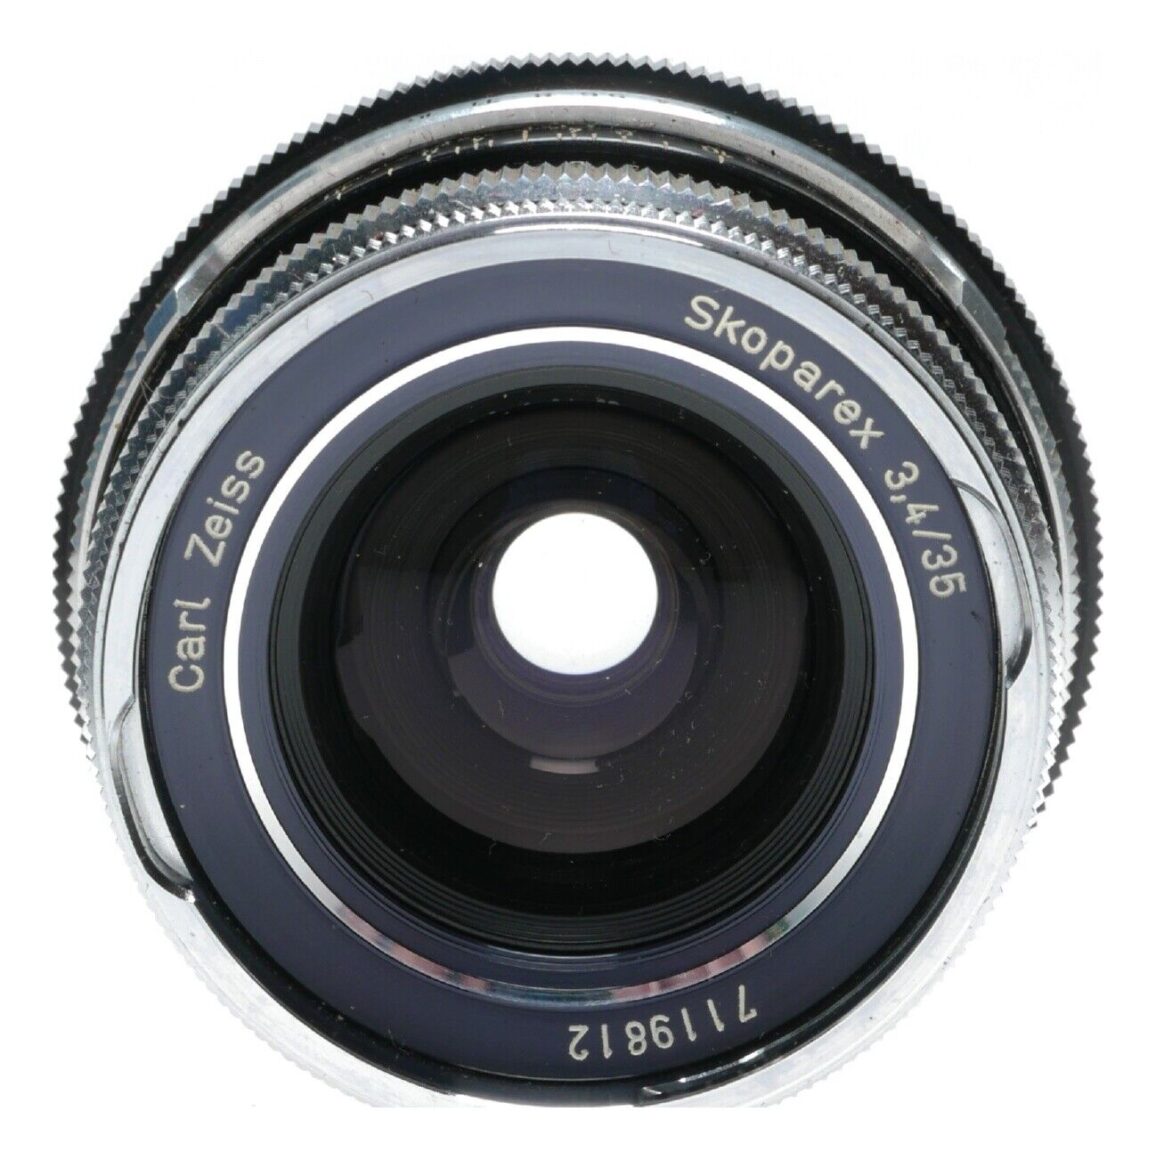 Carl Zeiss Skoparex 35mm F3.4